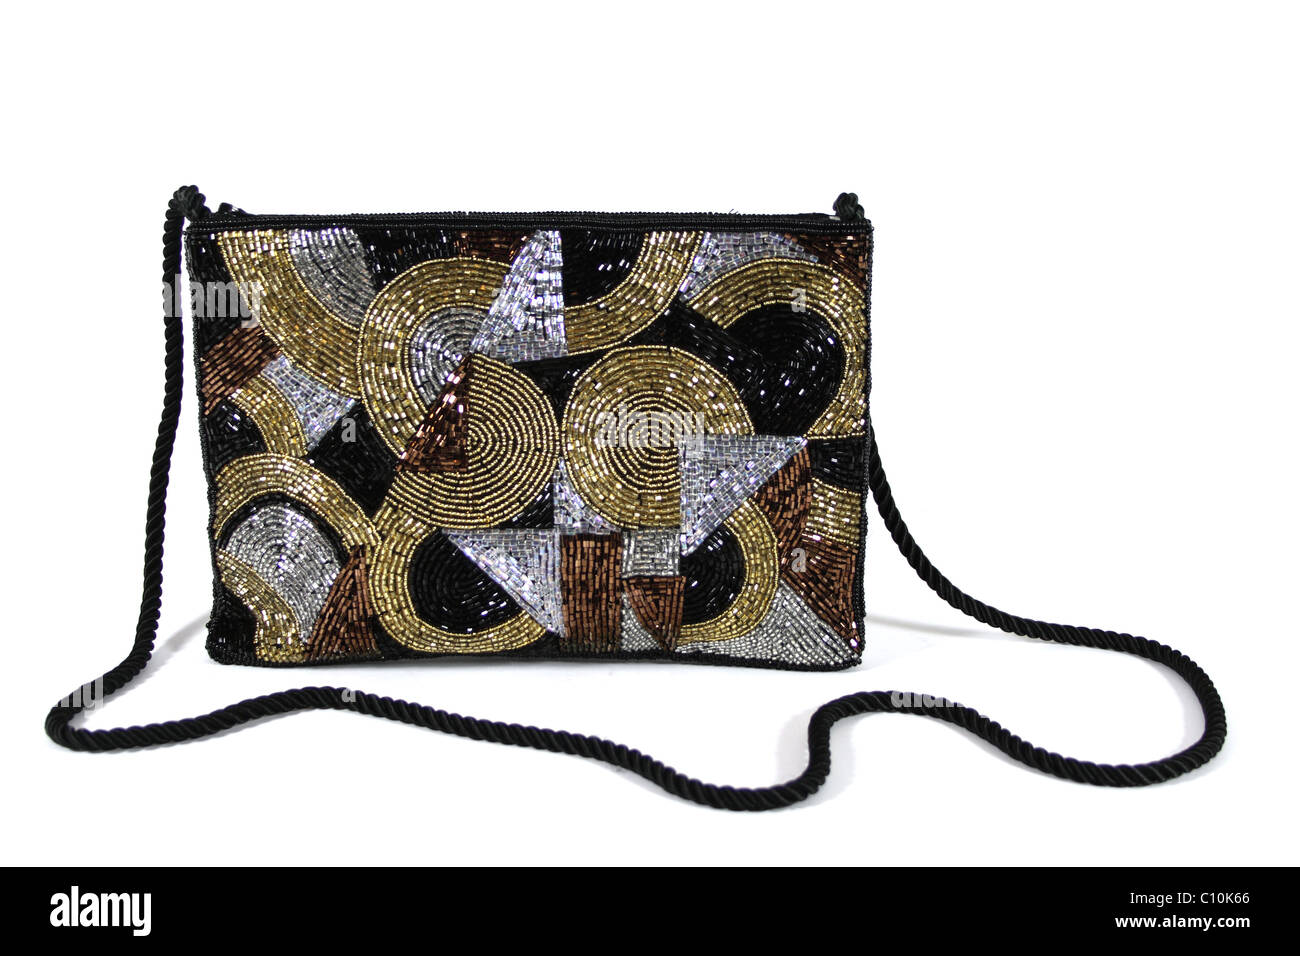 Clutch Bag schwarz, gold und Silber Muster mit langen String Band. c1960s Stil Stockfoto